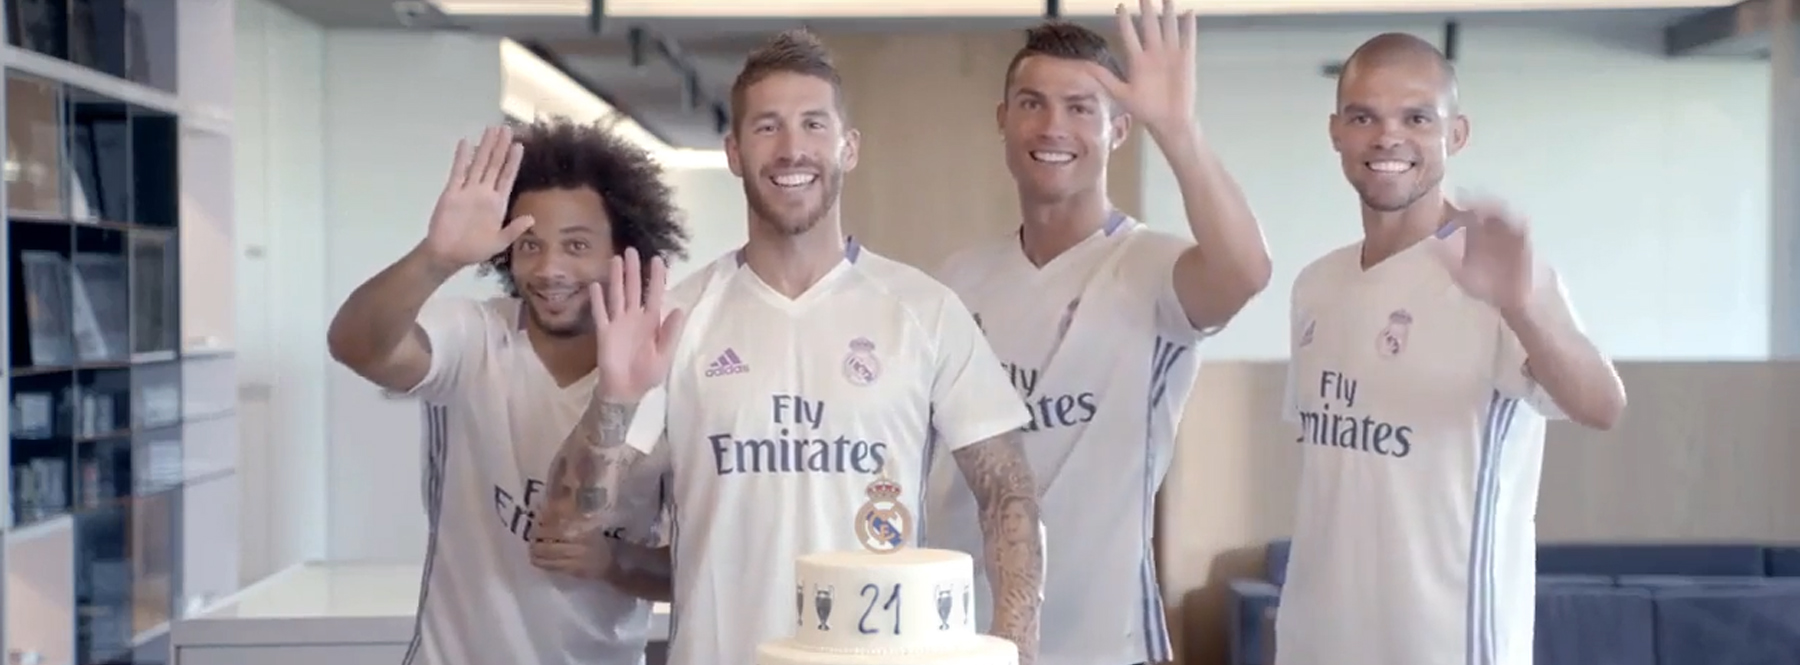 Ahí está el futuro jugador del Real Madrid celebrando su cumpleaños”